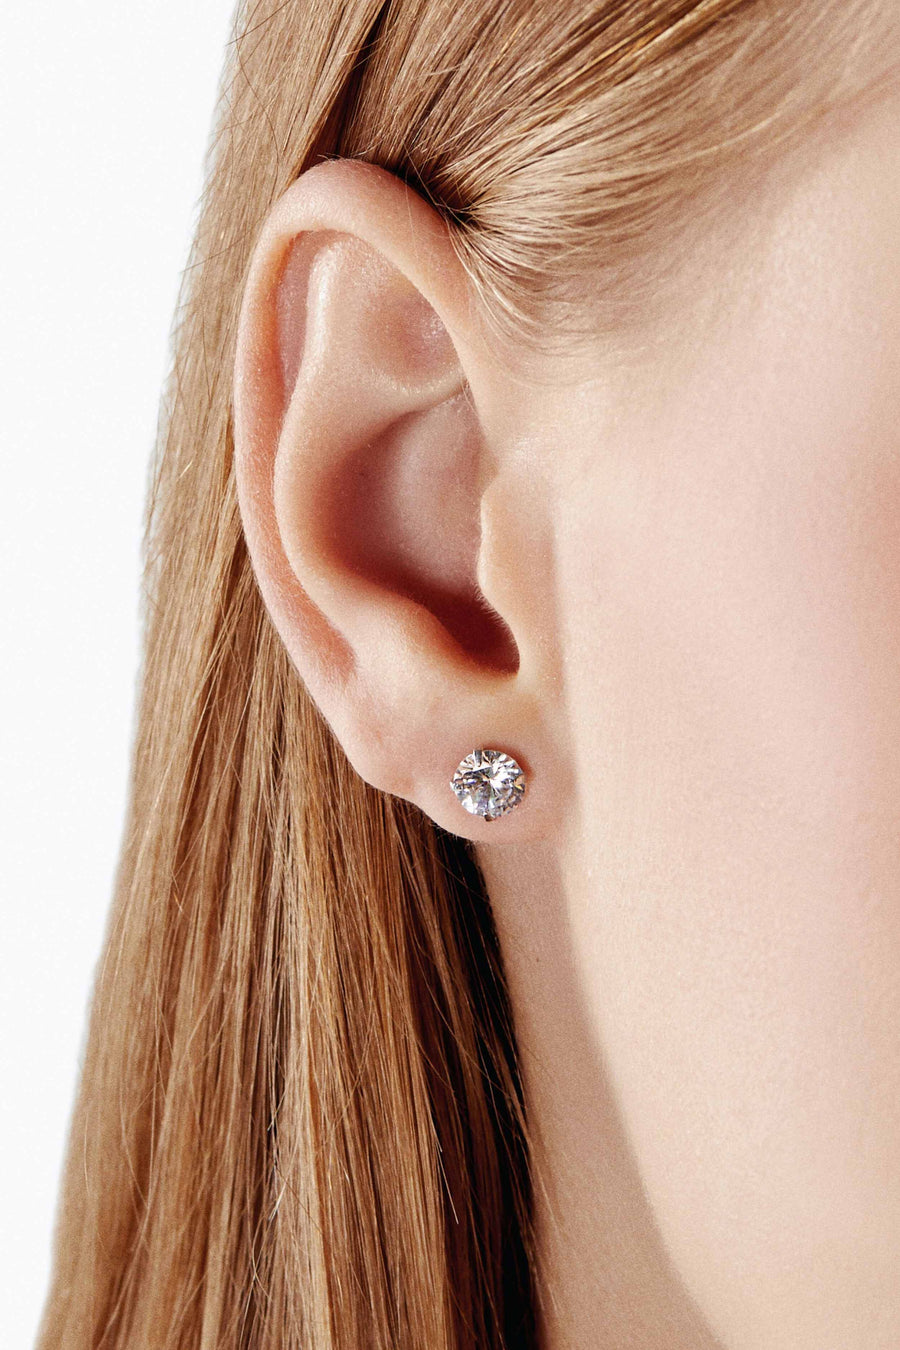 Lovesick Jewelry Sterling Silver Crystal Stud Earrings